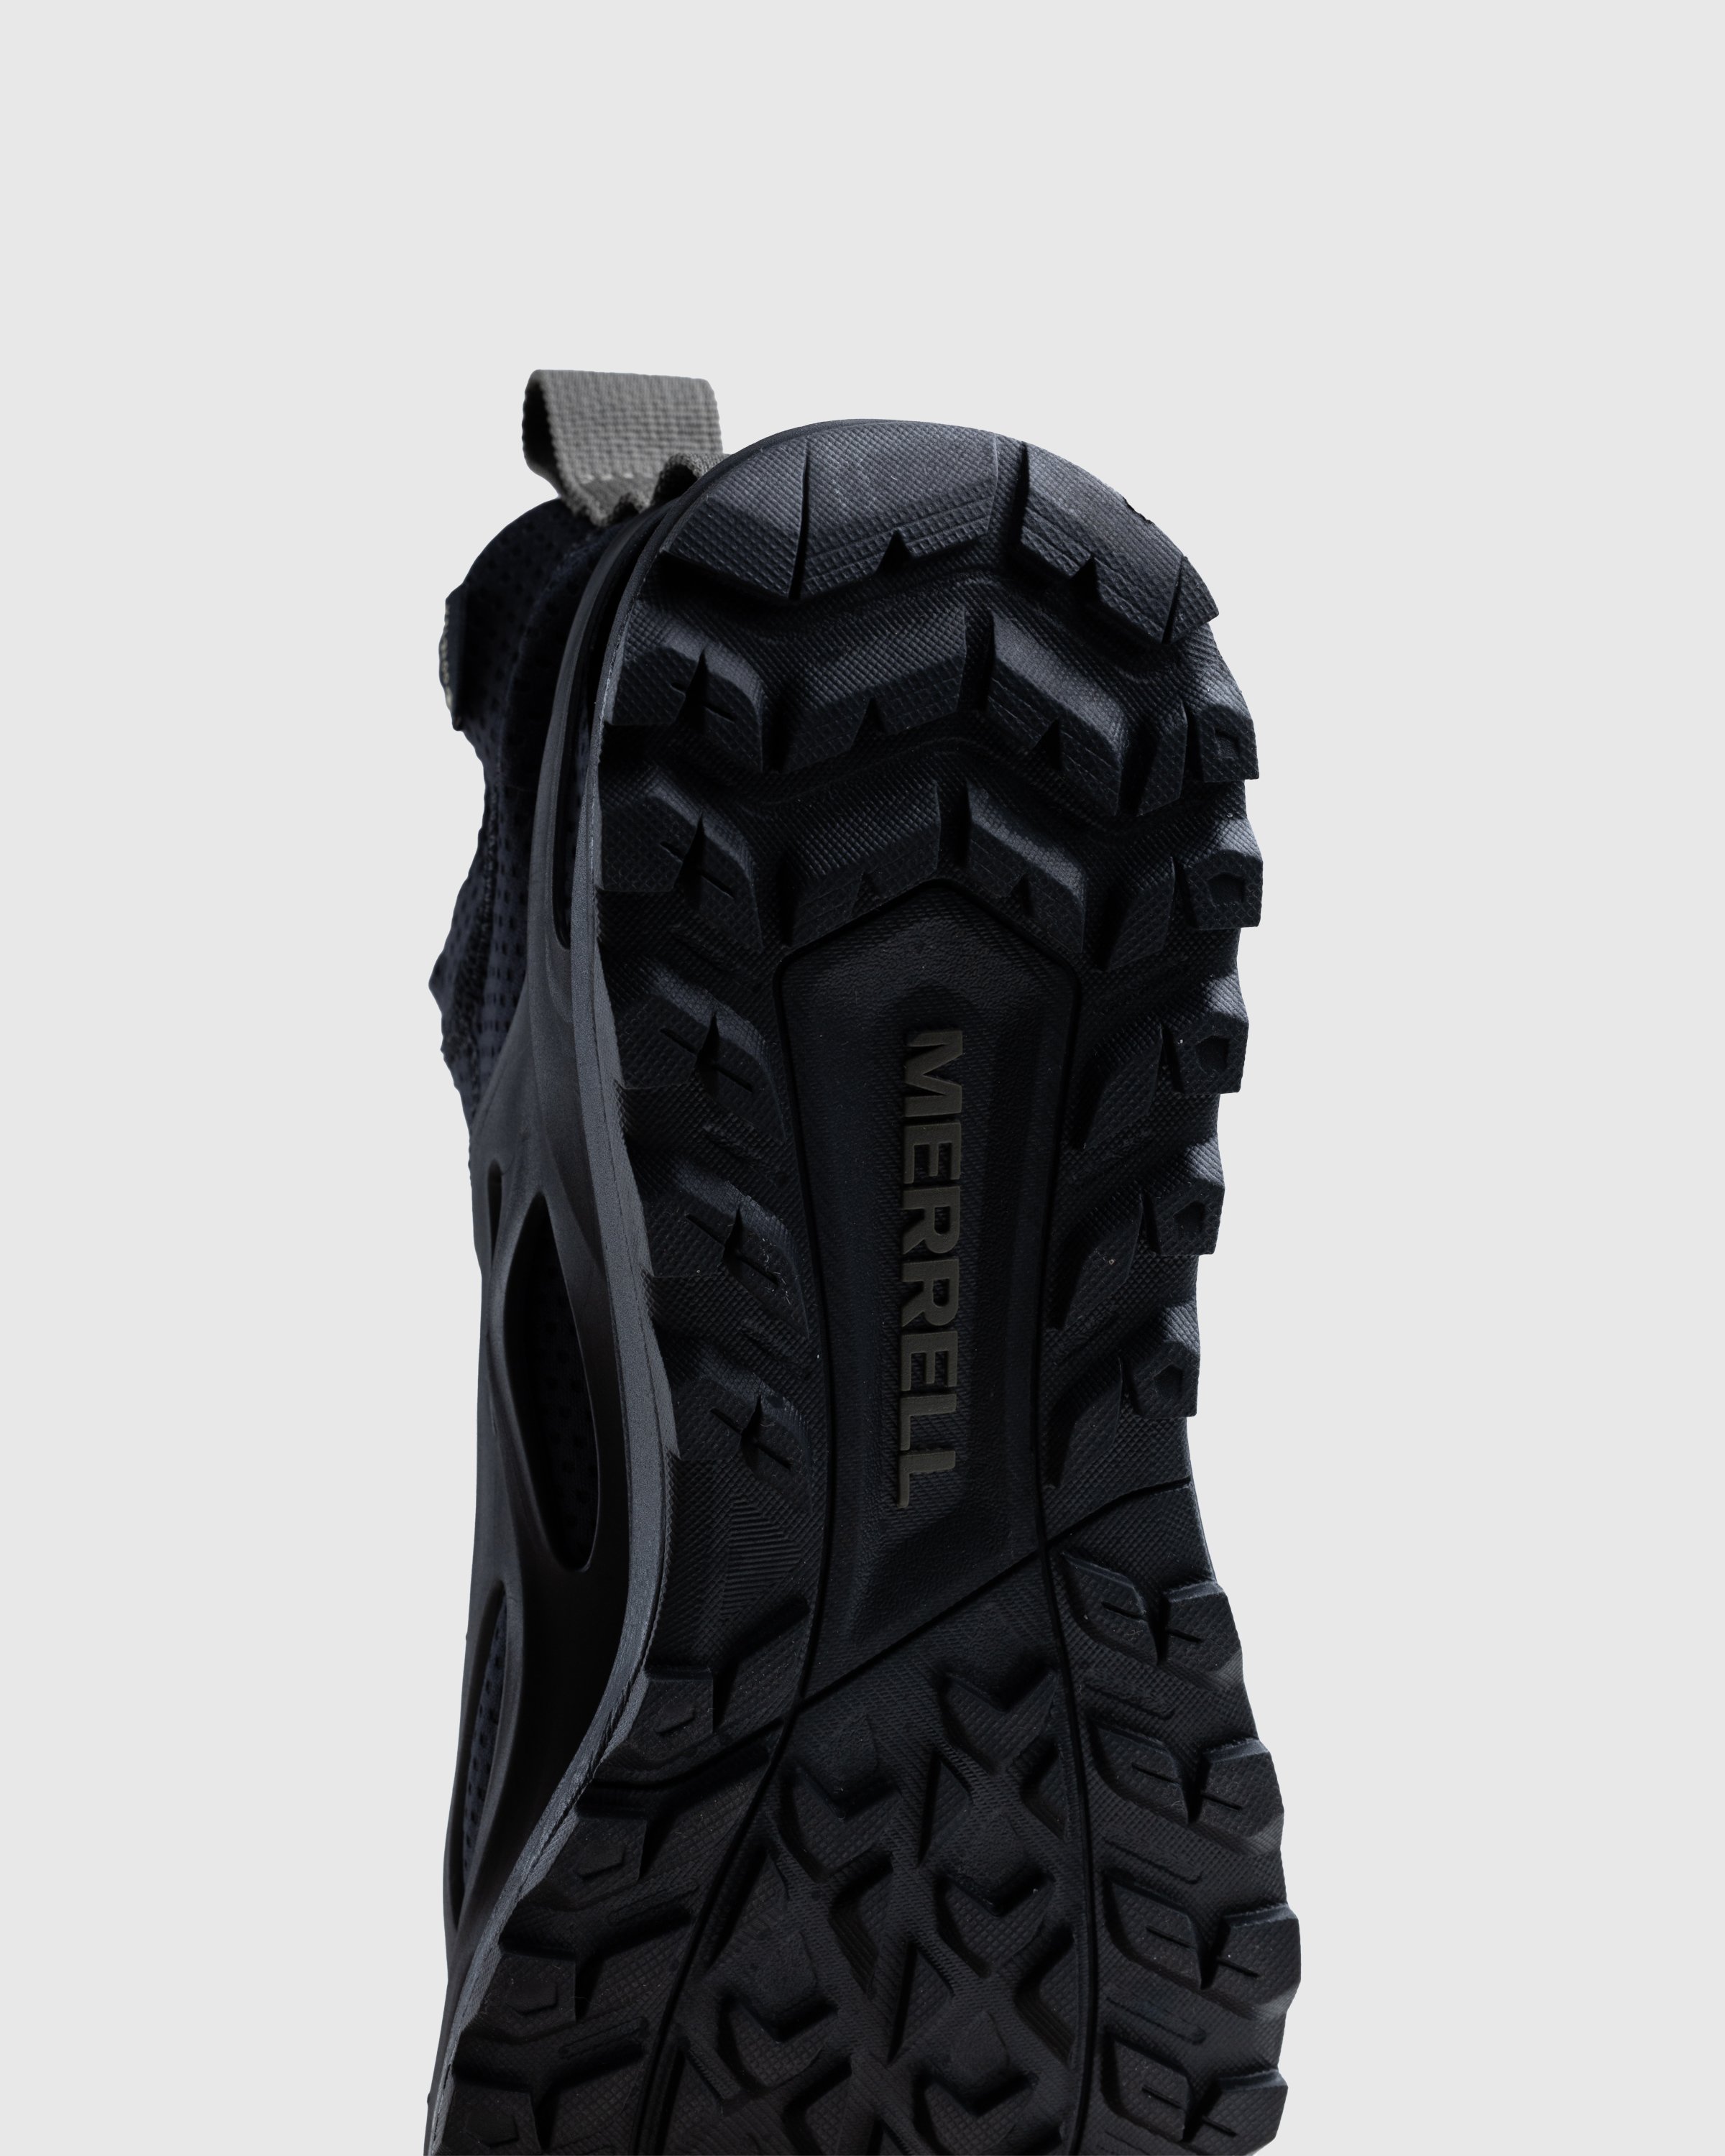 Merrell - HYDRO RUNNER MID GTX SE - Footwear - Black - Image 6